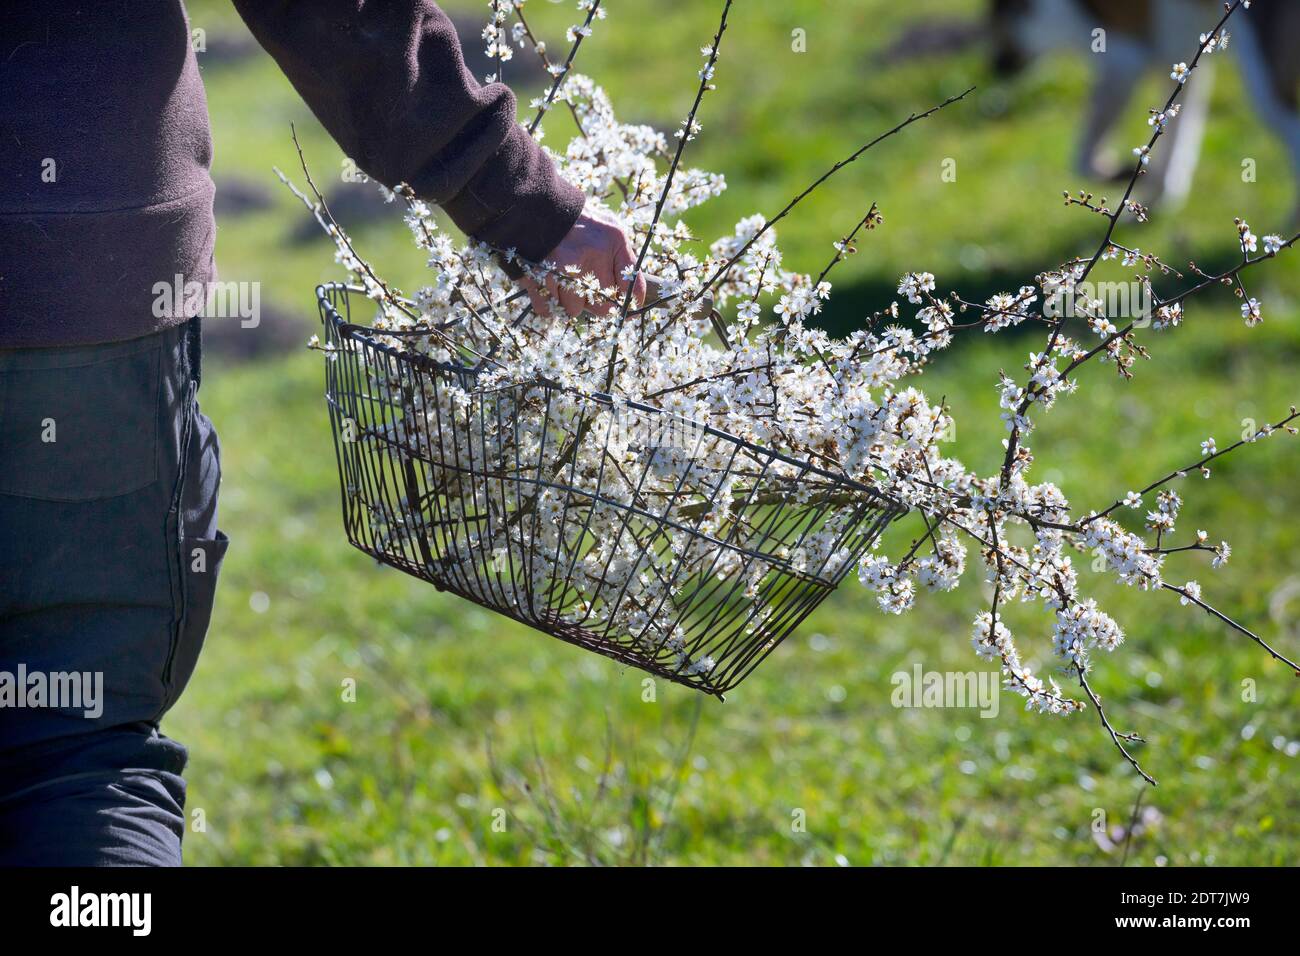 blackthorn, sloe (Prunus spinosa), harvested sloe flowers in a basket, Germany Stock Photo